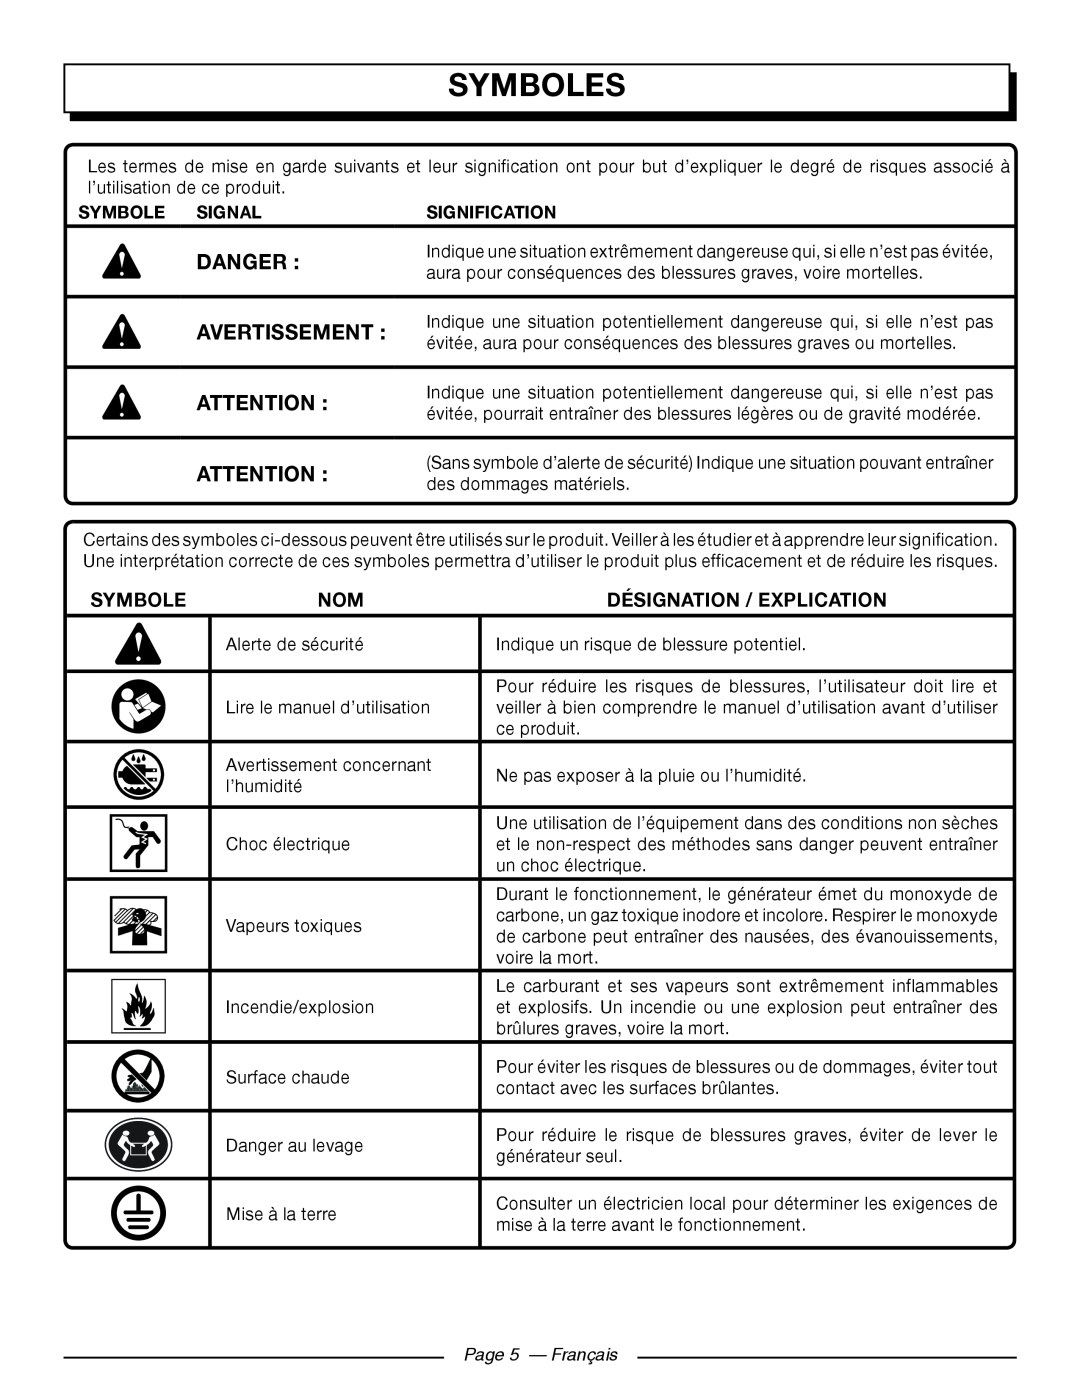 Homelite UT902250 manuel dutilisation Symboles, Désignation / Explication, Page 5 — Français, Danger, Avertissement 